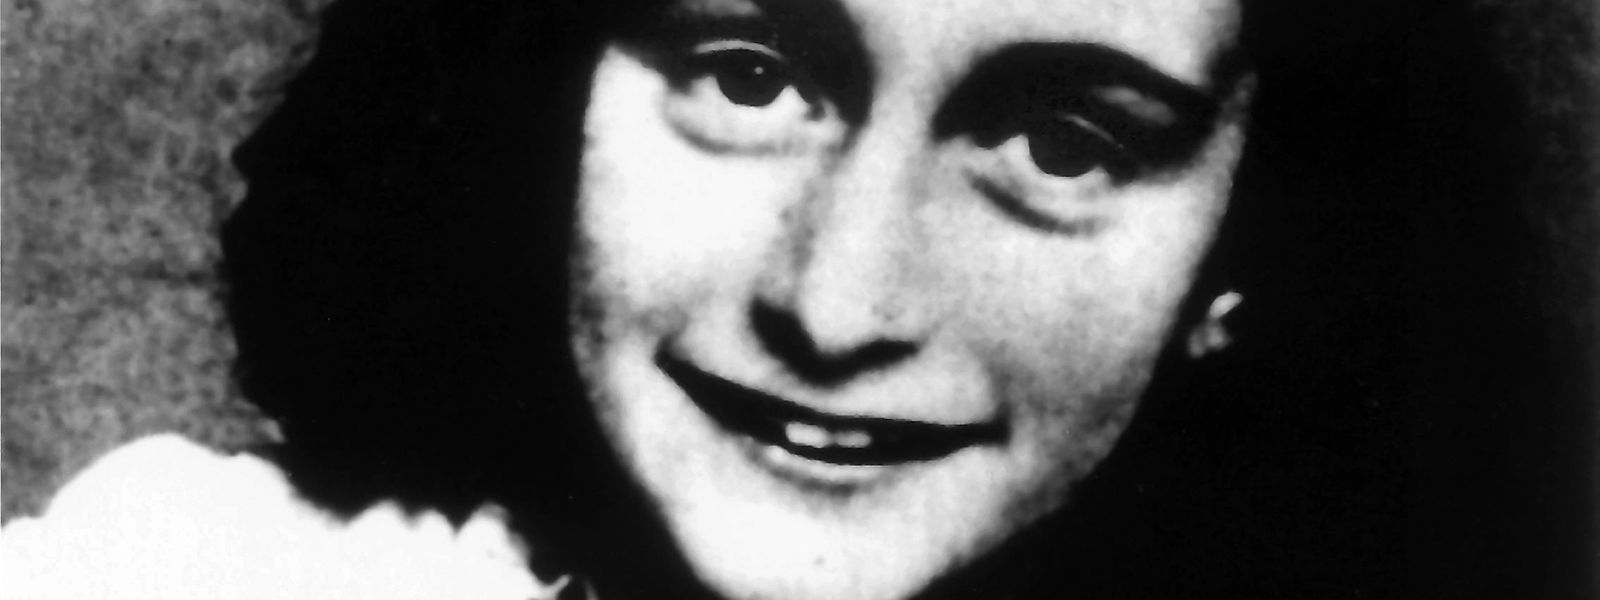 Das jüdische Mädchen Anne Frank, das durch ihre Tagebuchaufzeichnungen im Versteck ihrer Familie in Amsterdam (Niederlande) während des Zweiten Weltkriegs bekannt wurde (undatiertes Archivfoto).